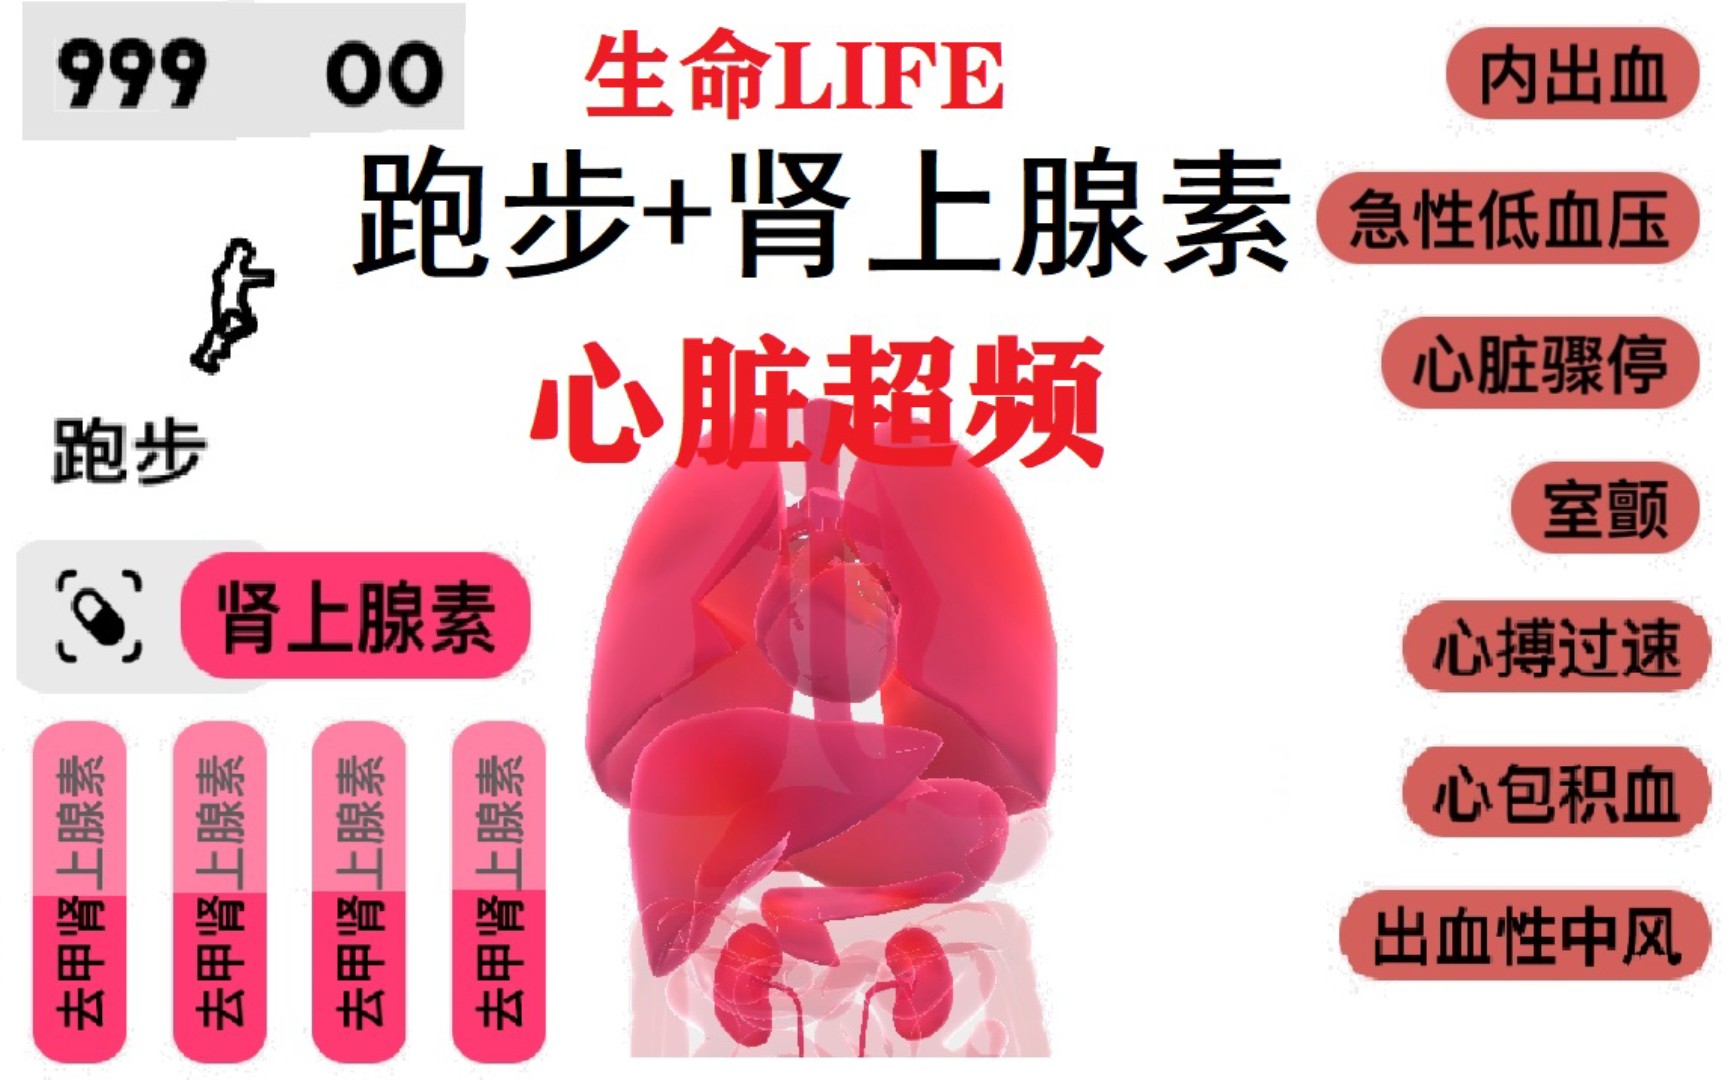 【生命LIFE】肾上腺素+跑步给心脏超频